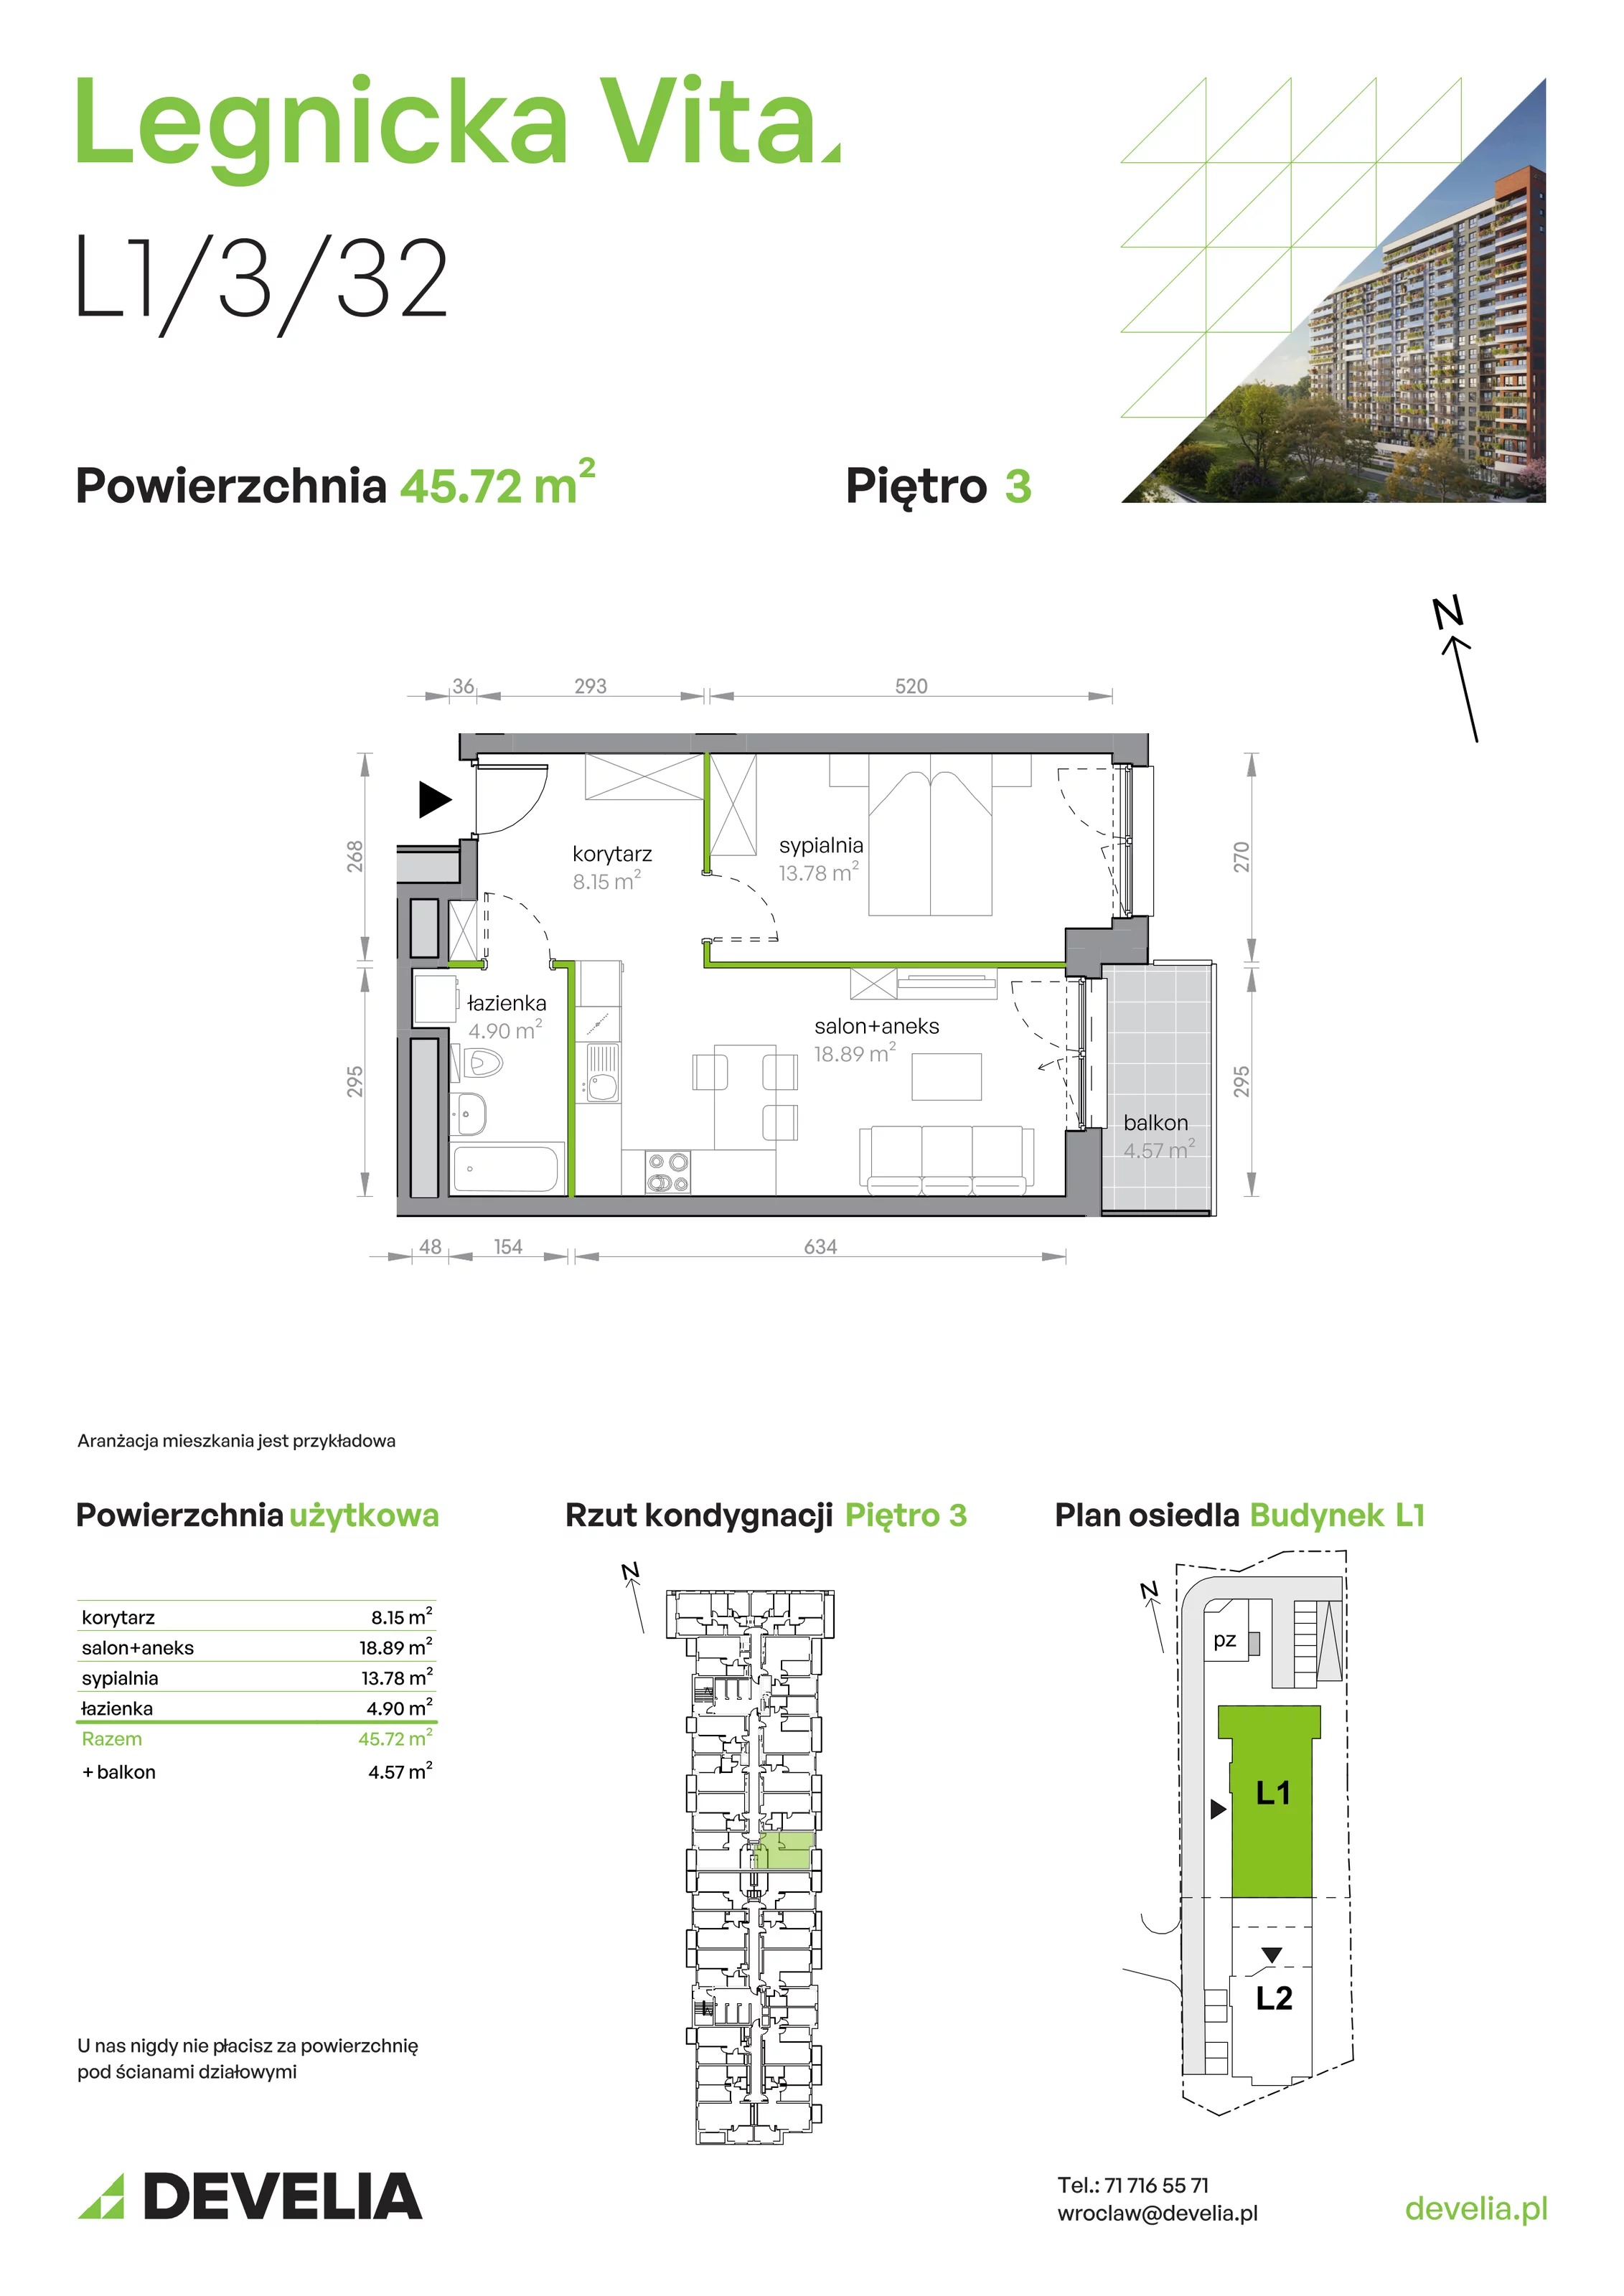 Mieszkanie 45,72 m², piętro 3, oferta nr L1/3/32, Legnicka Vita, Wrocław, Gądów-Popowice Południowe, Popowice, ul. Legnicka 52 A